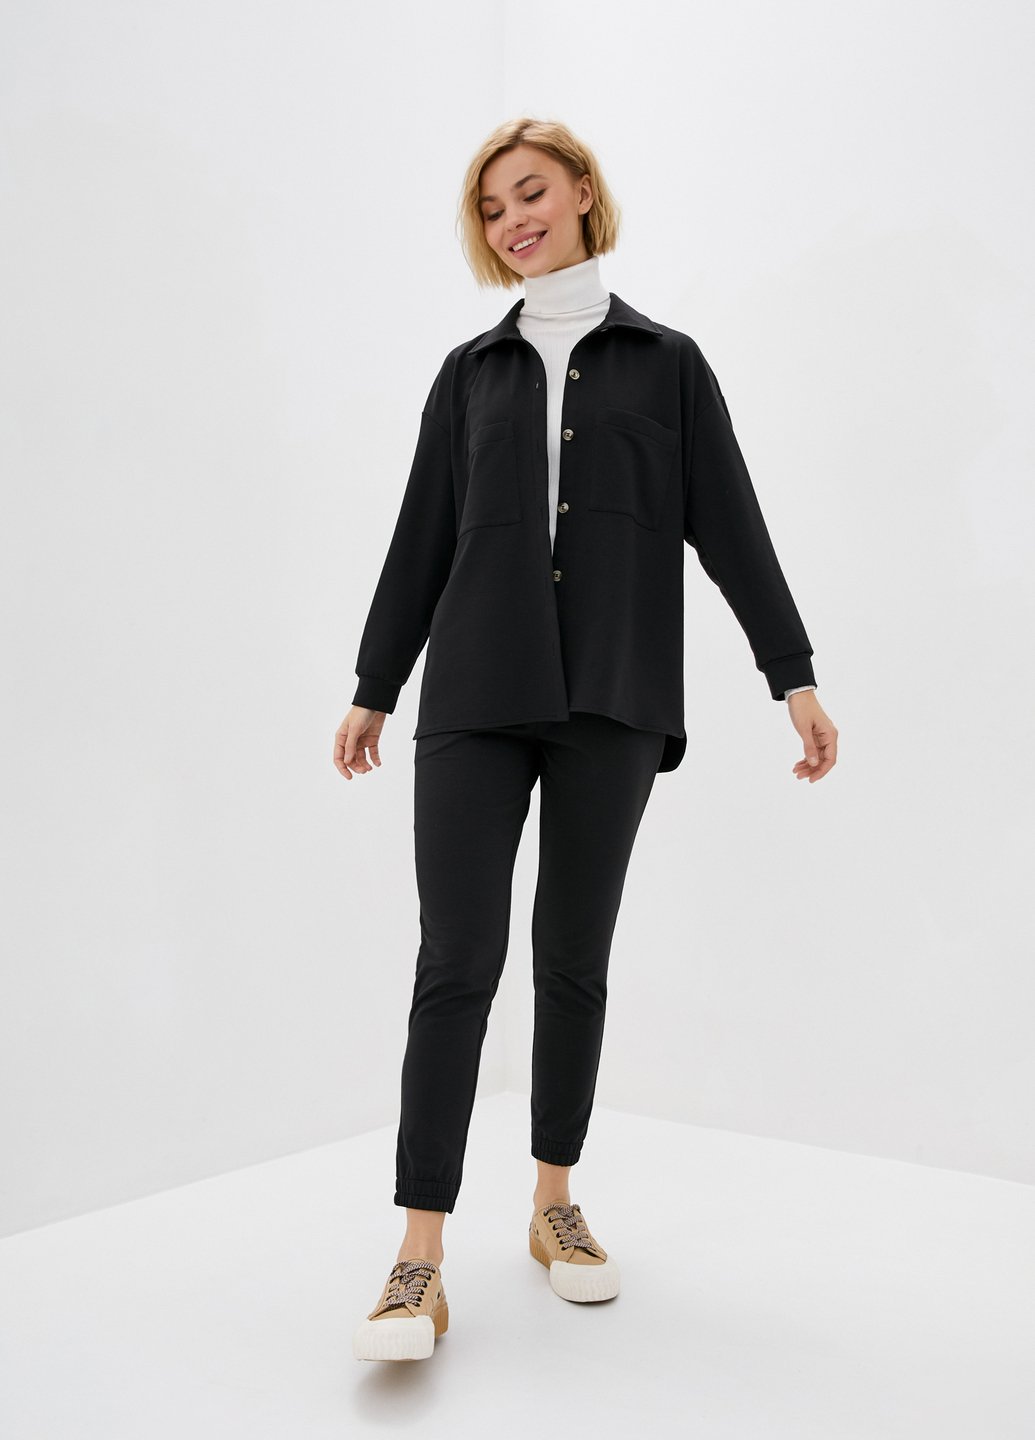 Купить Костюм женский с рубашкой черного цвета Merlini Сандерленд 100000085, размер 42-44 в интернет-магазине